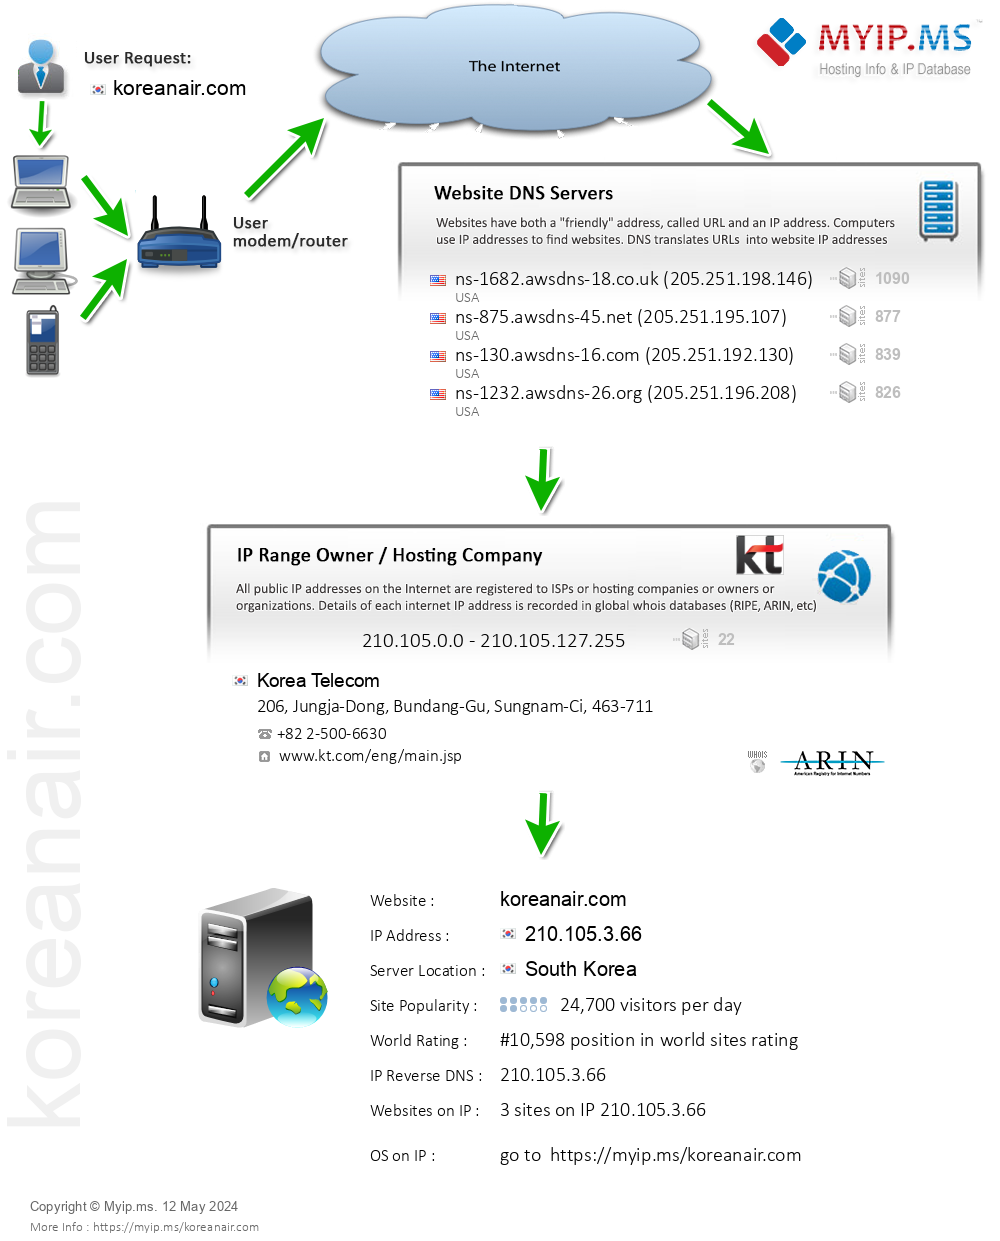 Koreanair.com - Website Hosting Visual IP Diagram